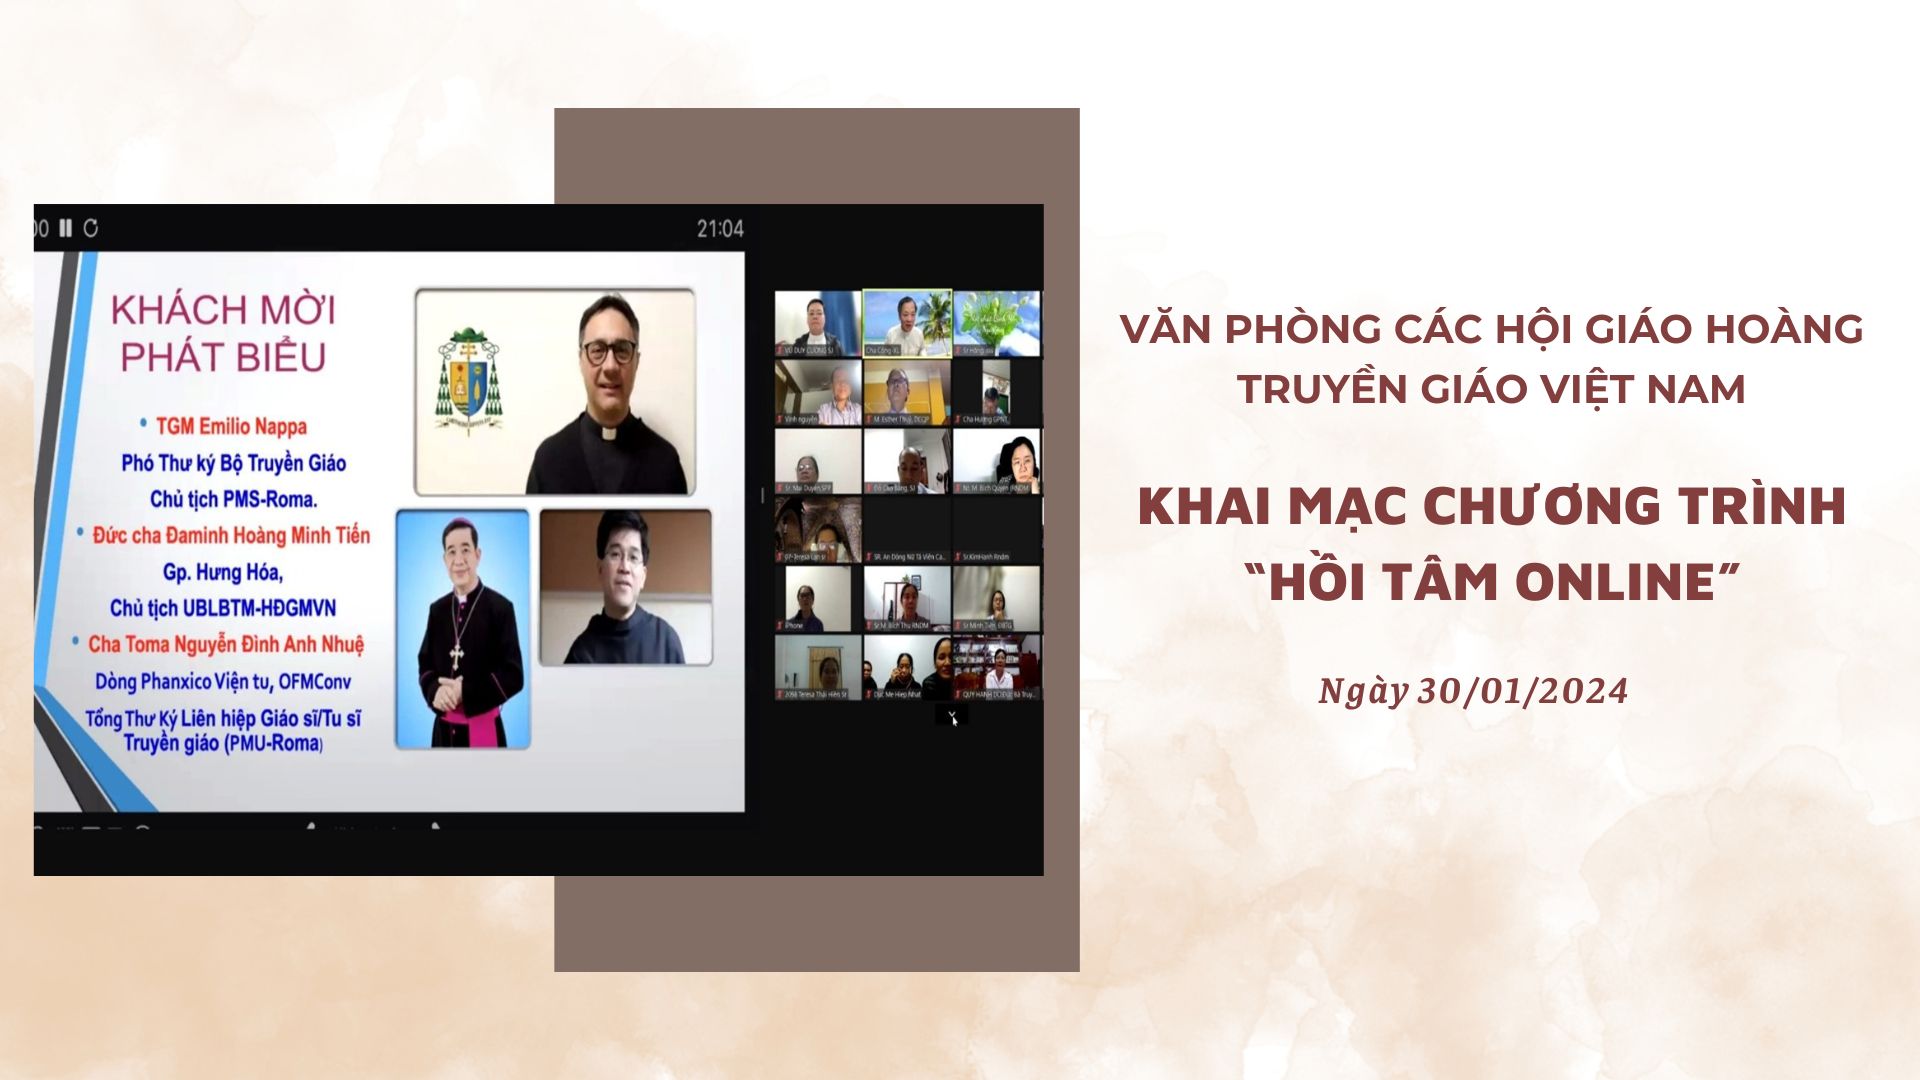 Văn phòng các Hội Giáo Hoàng Truyền Giáo Việt Nam khai mạc chương trình “hồi tâm online”